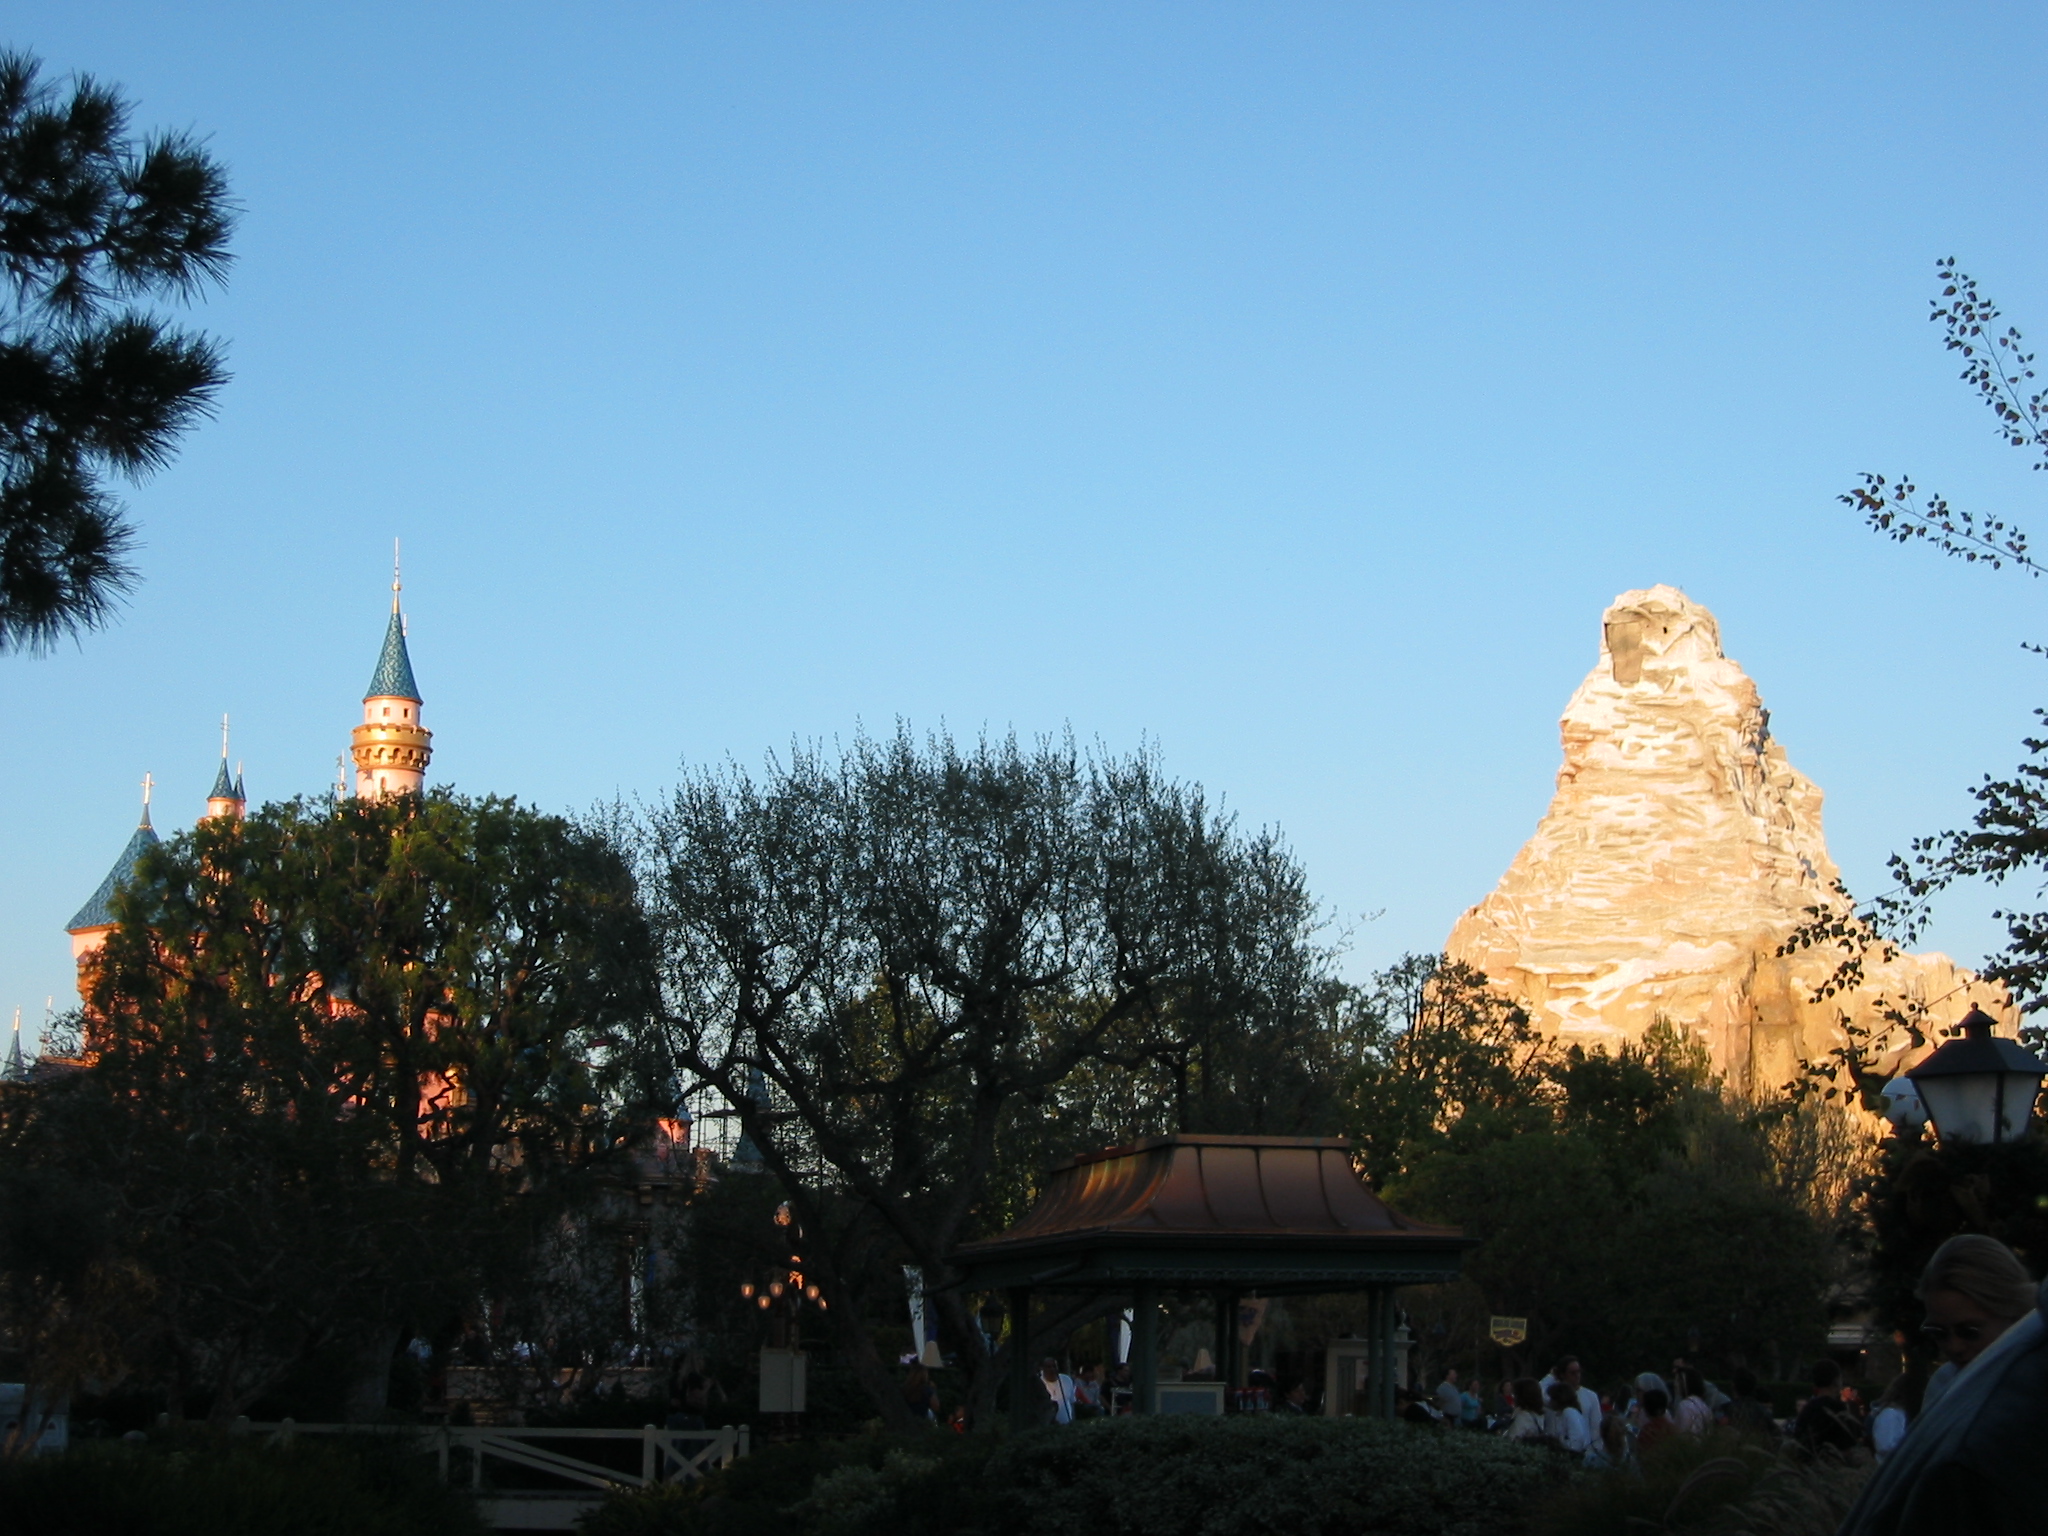 Castle and Matterhorn